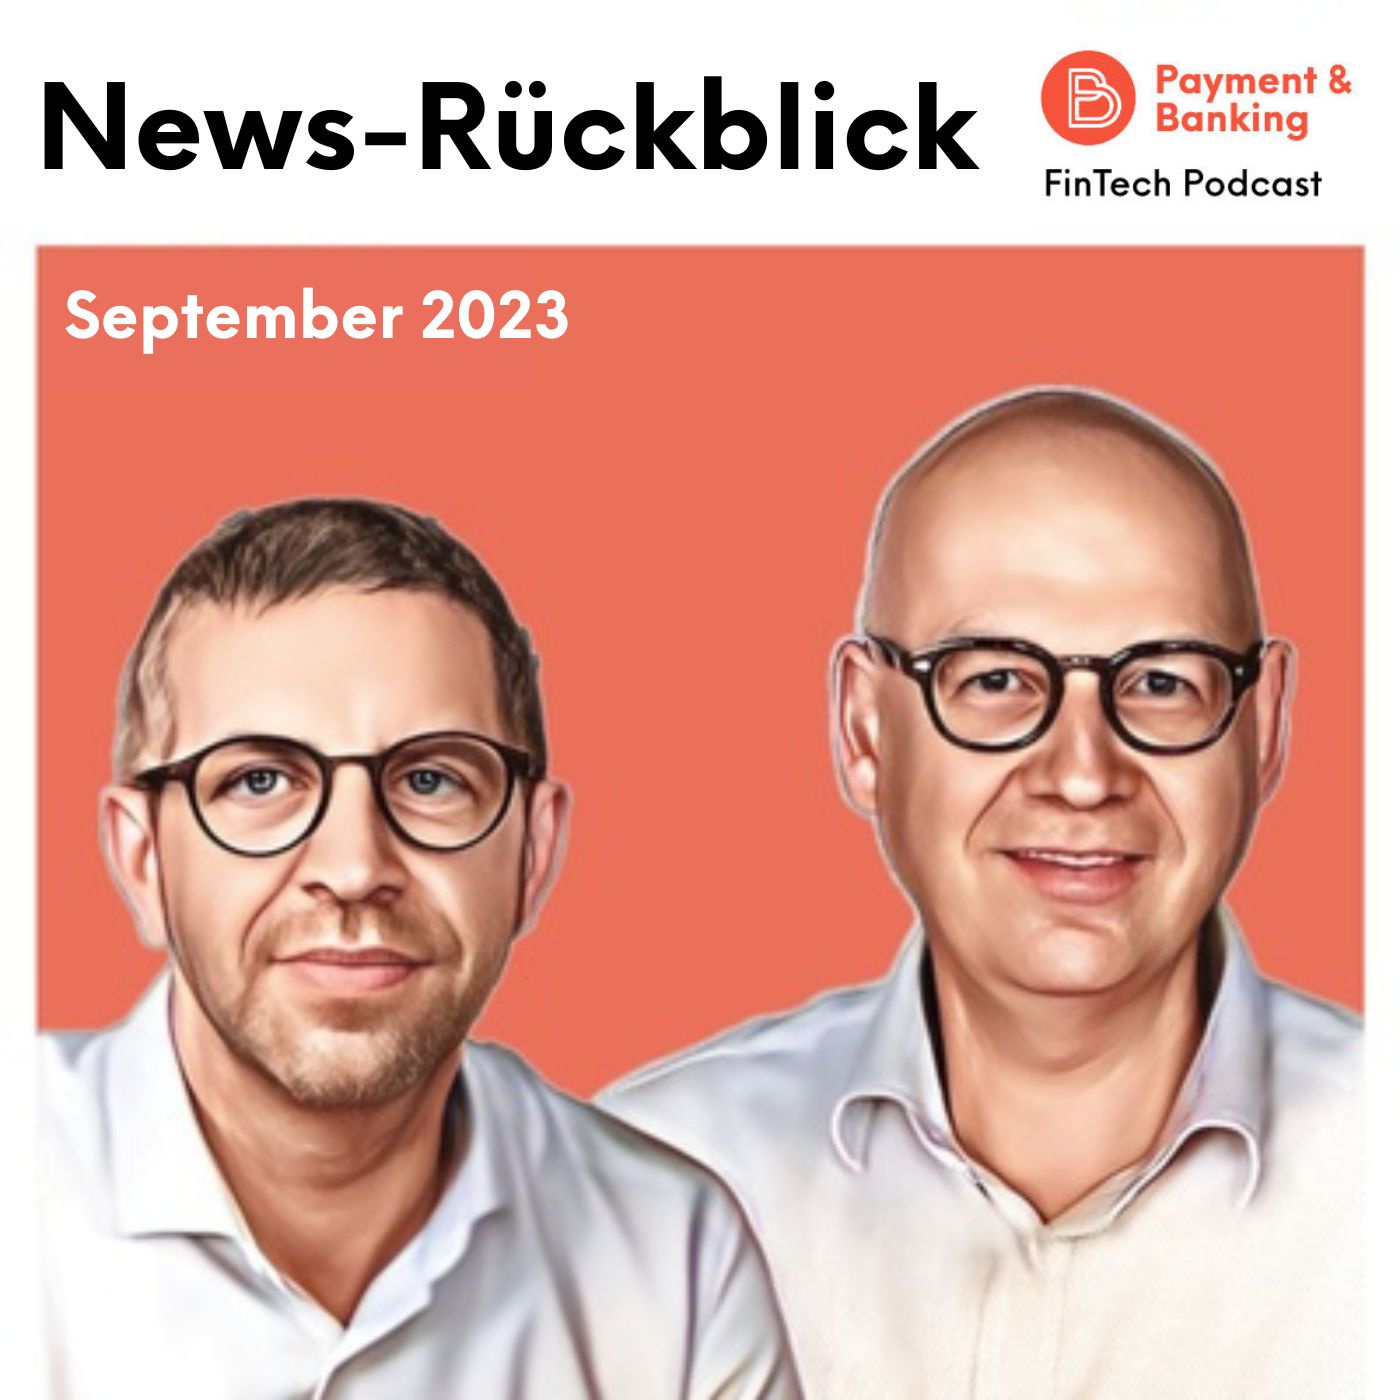 #449: News-Rückblick September 2023: Fintech-Neuigkeiten mit Solaris, MasterCard und Sprinque